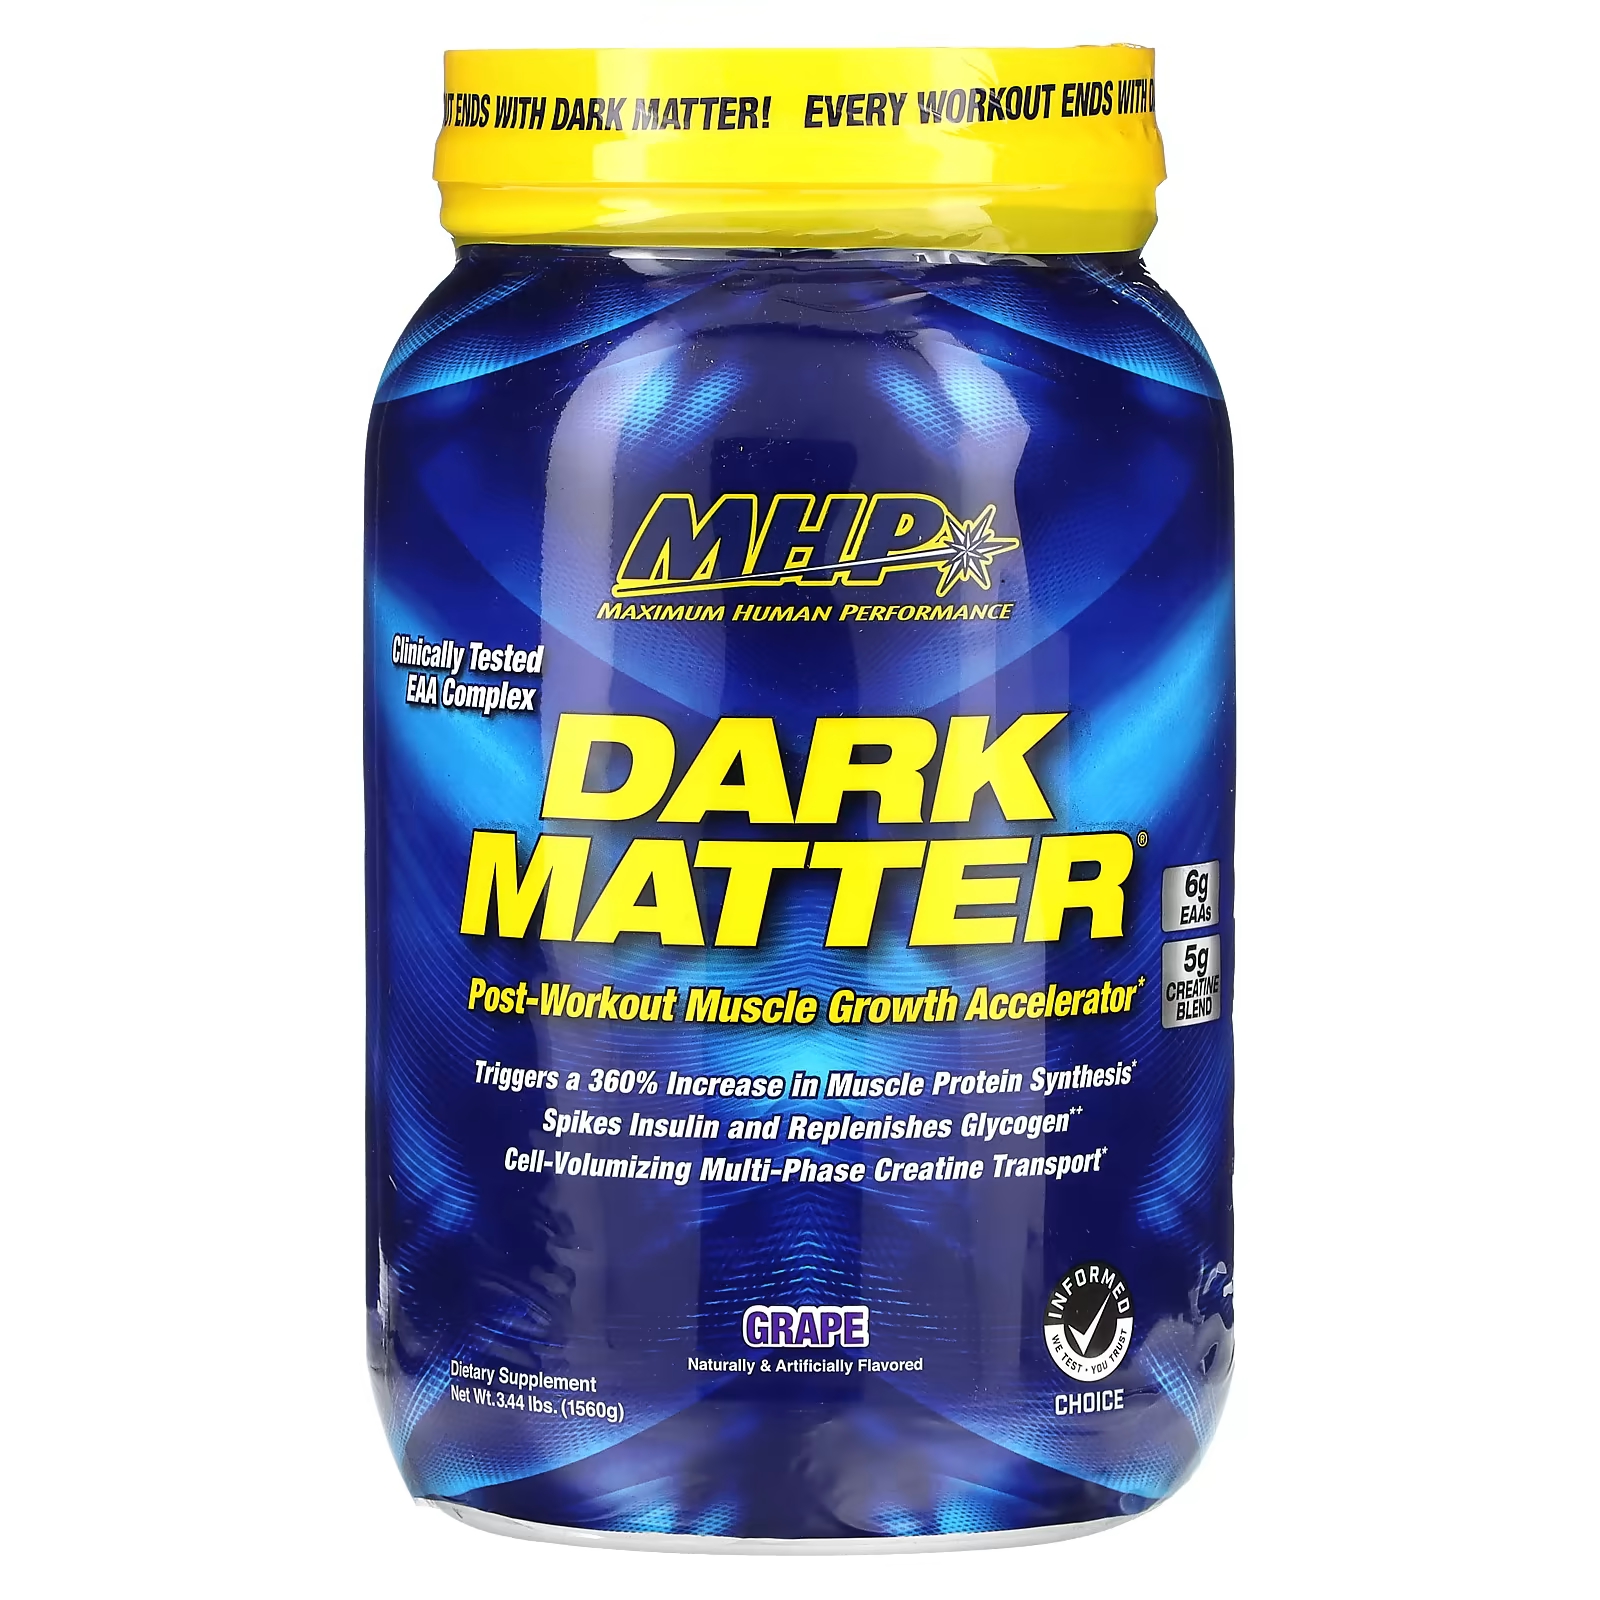 Ускоритель роста мышц Mhp Dark Matter после тренировки, виноград mhp dark matter ускоритель роста мышц после тренировки голубая малина 1560 г 3 44 фунта